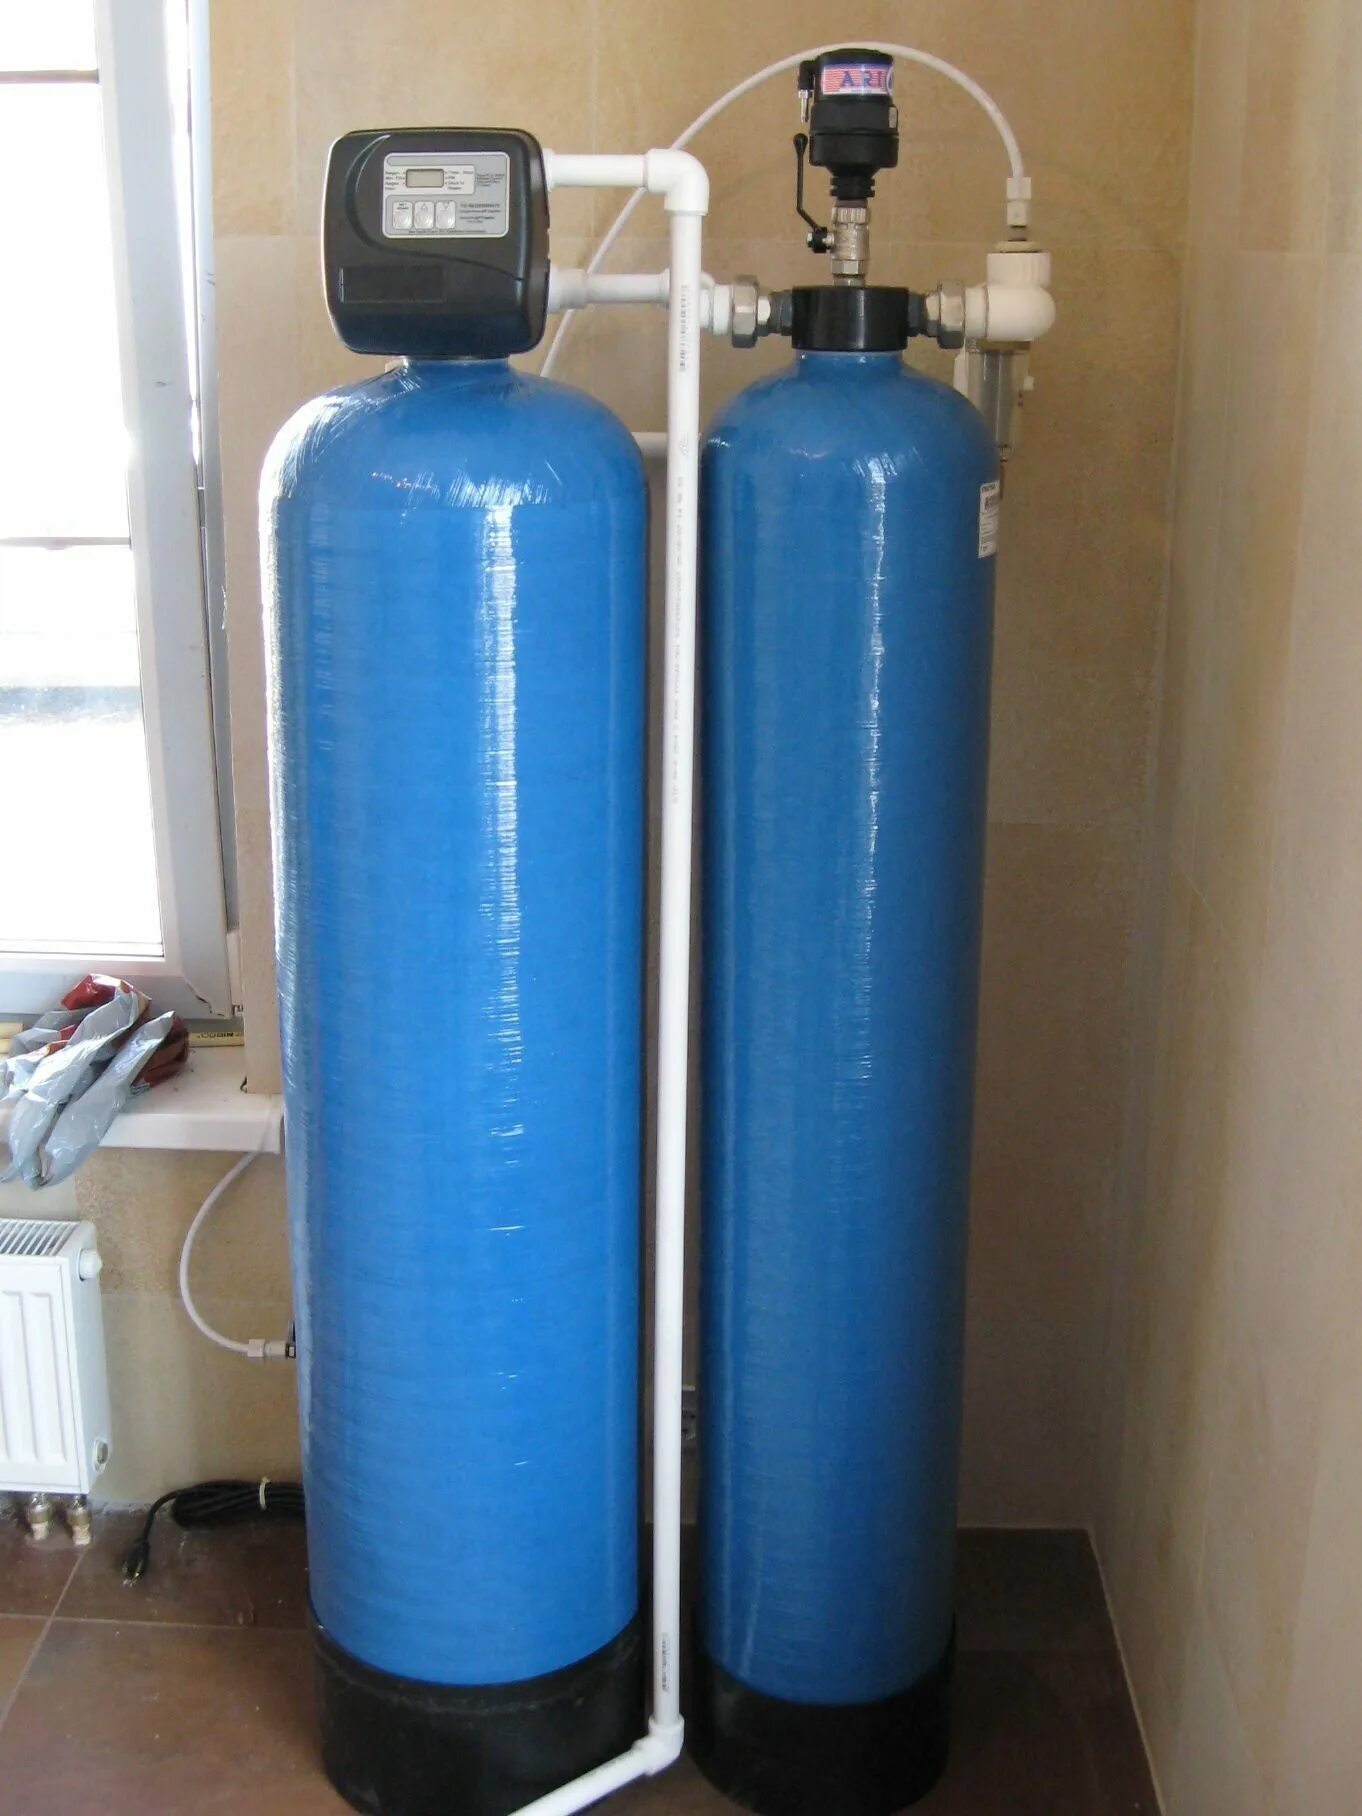 Система очистки обезжелезивания воды. Колонна 1054 обезжелезивания. Аэрационная колонна для очистки воды 1054. Система обезжелезивания воды (очистка воды от железа). Очистка воды железа купить